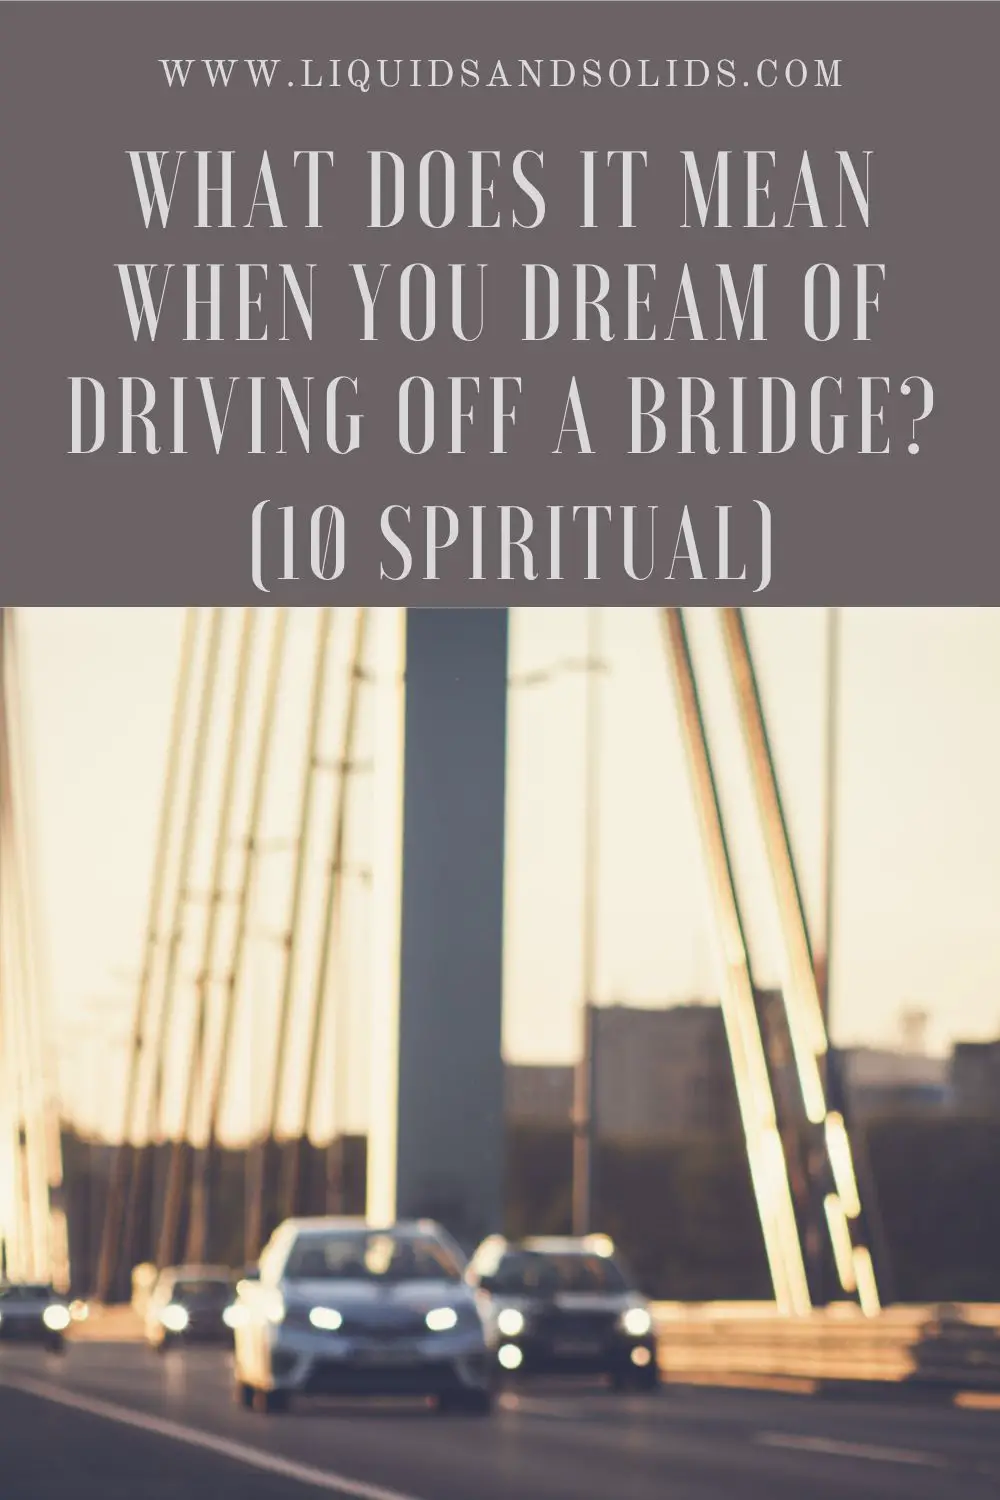 Dreams Of Driving A Vehicle Off A Bridge